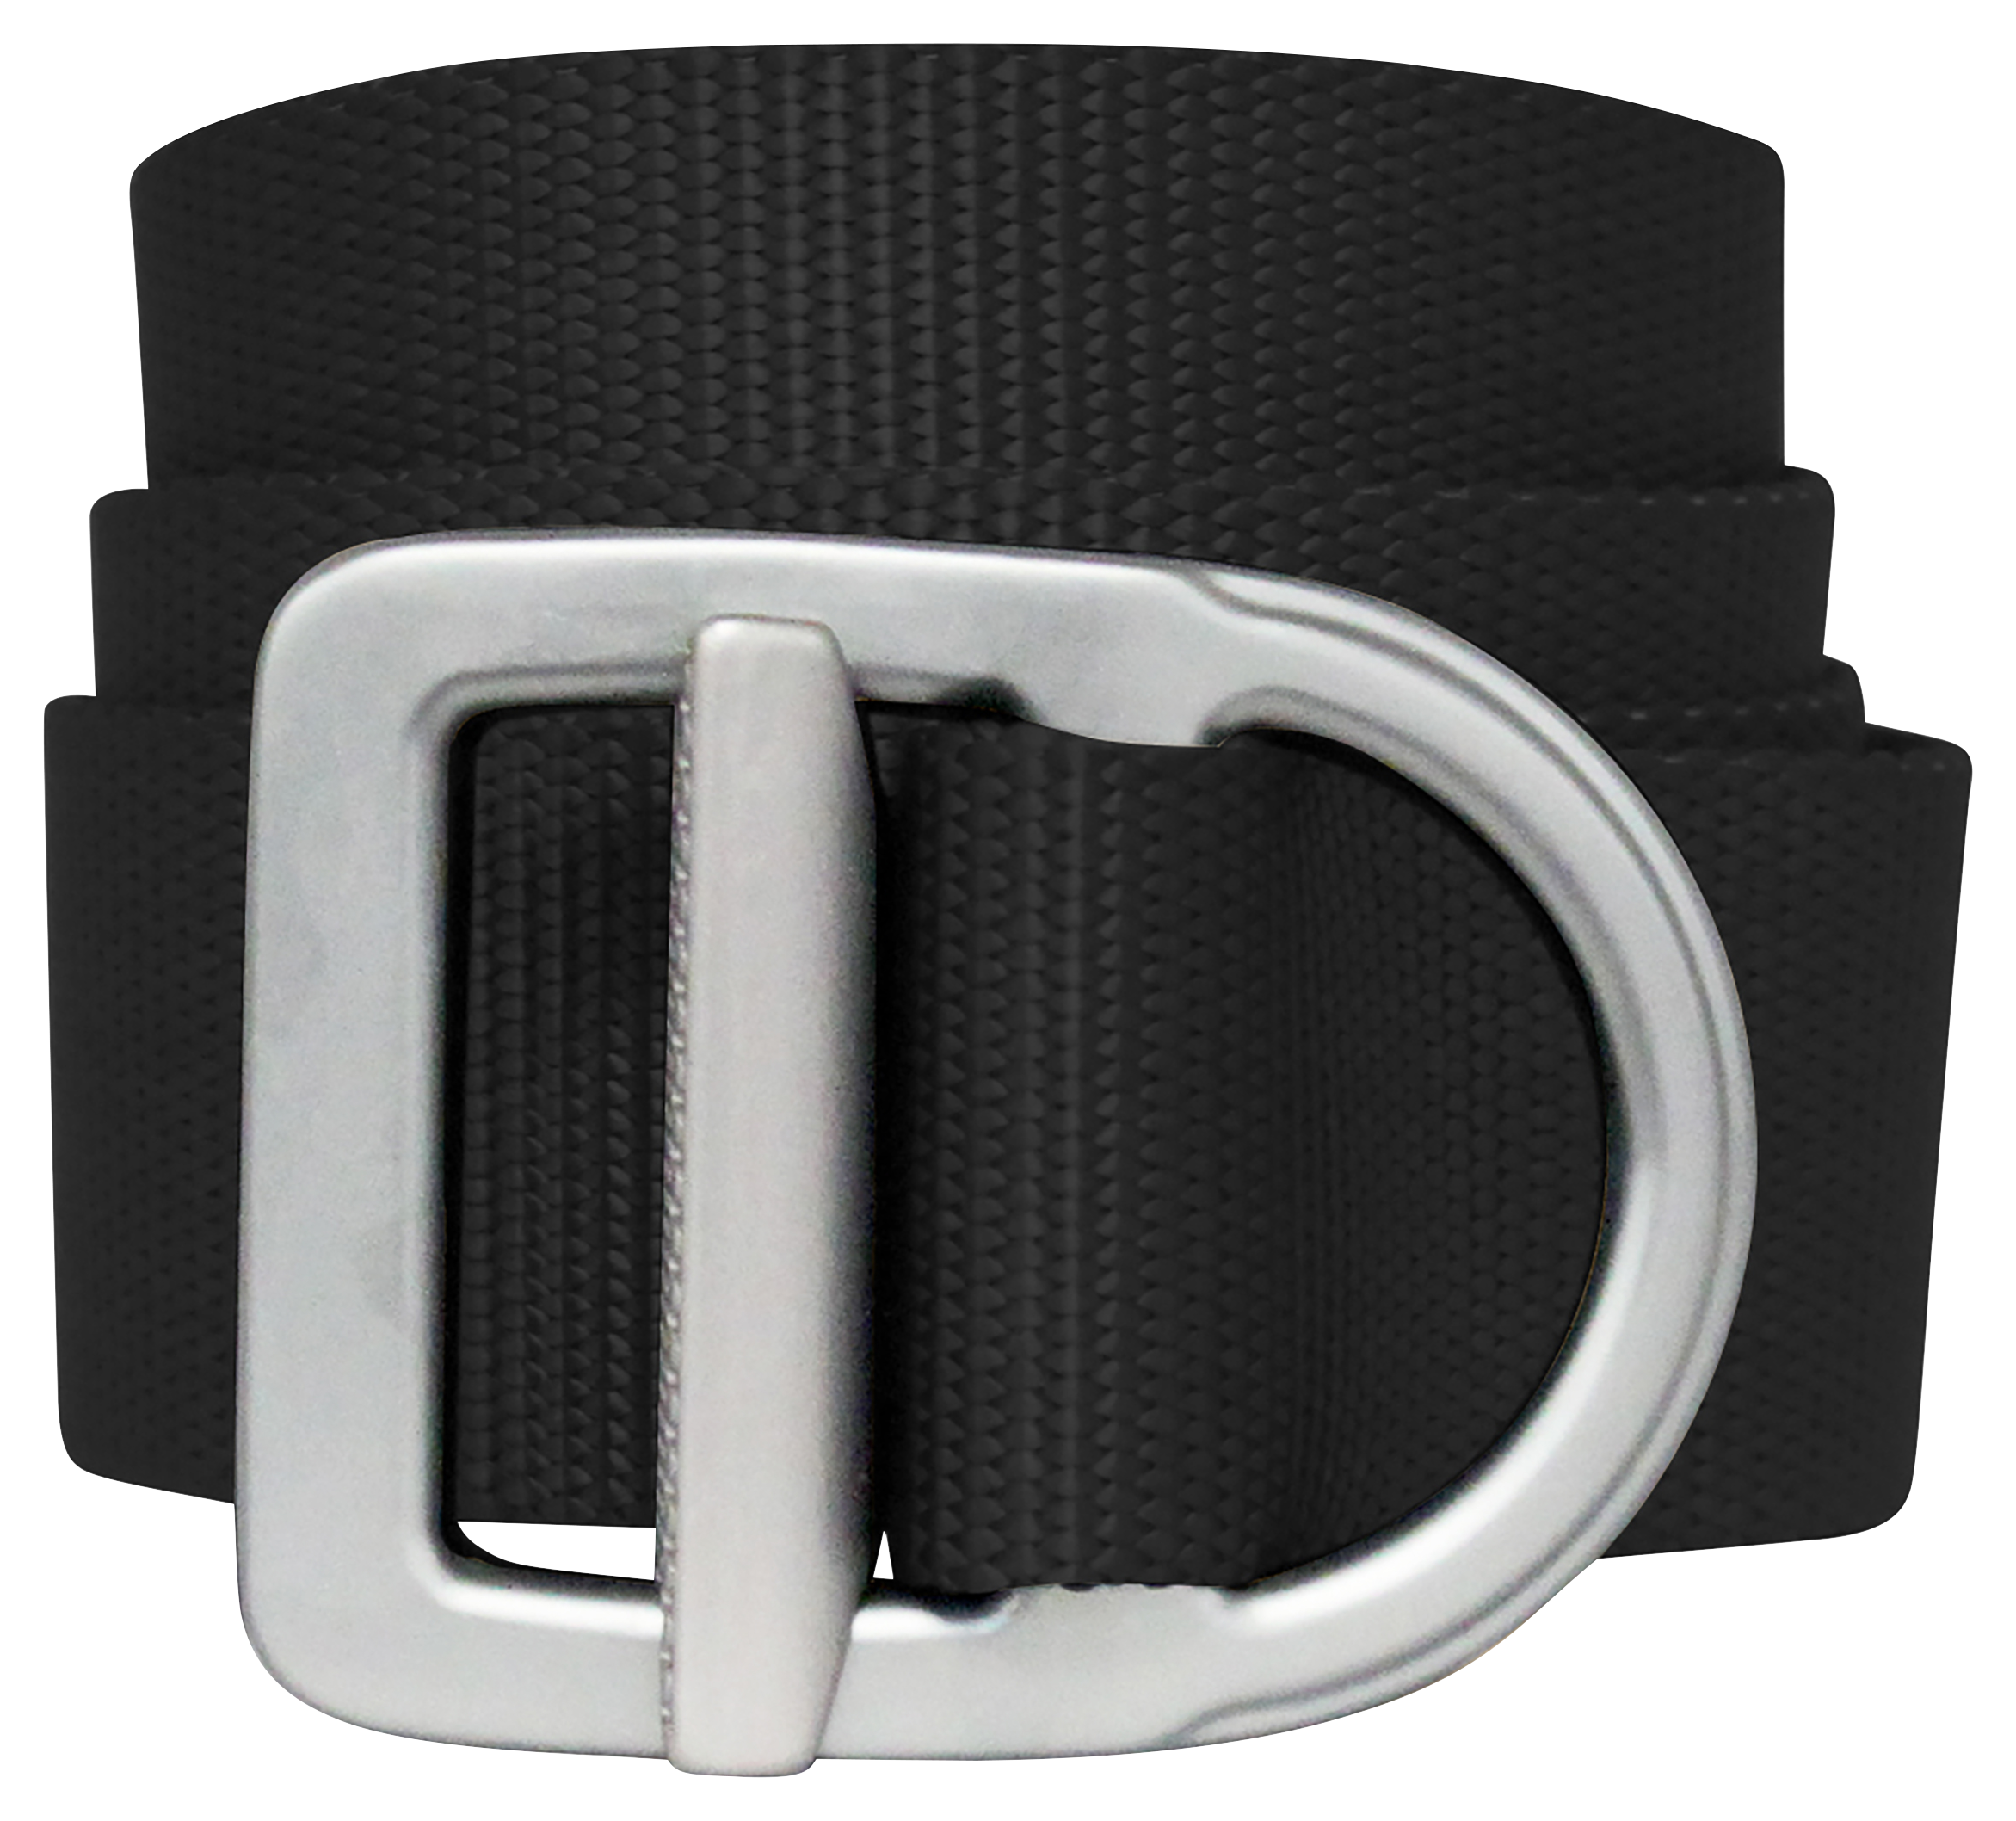 Bison Designs Last Chance Delta Light-Duty Belt for Men - Black/Silver - L product image